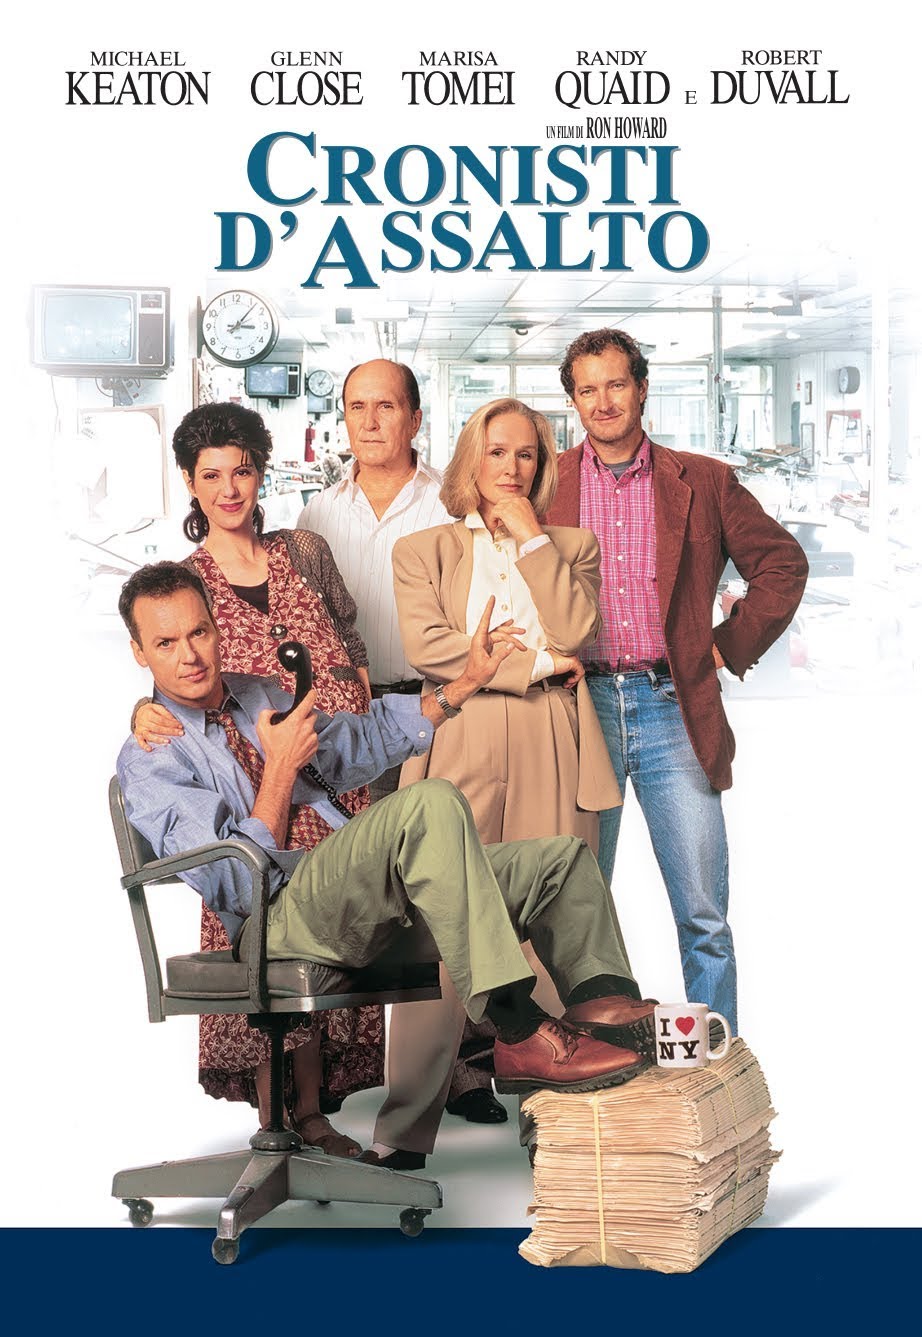 Cronisti d’assalto [HD] (1994)